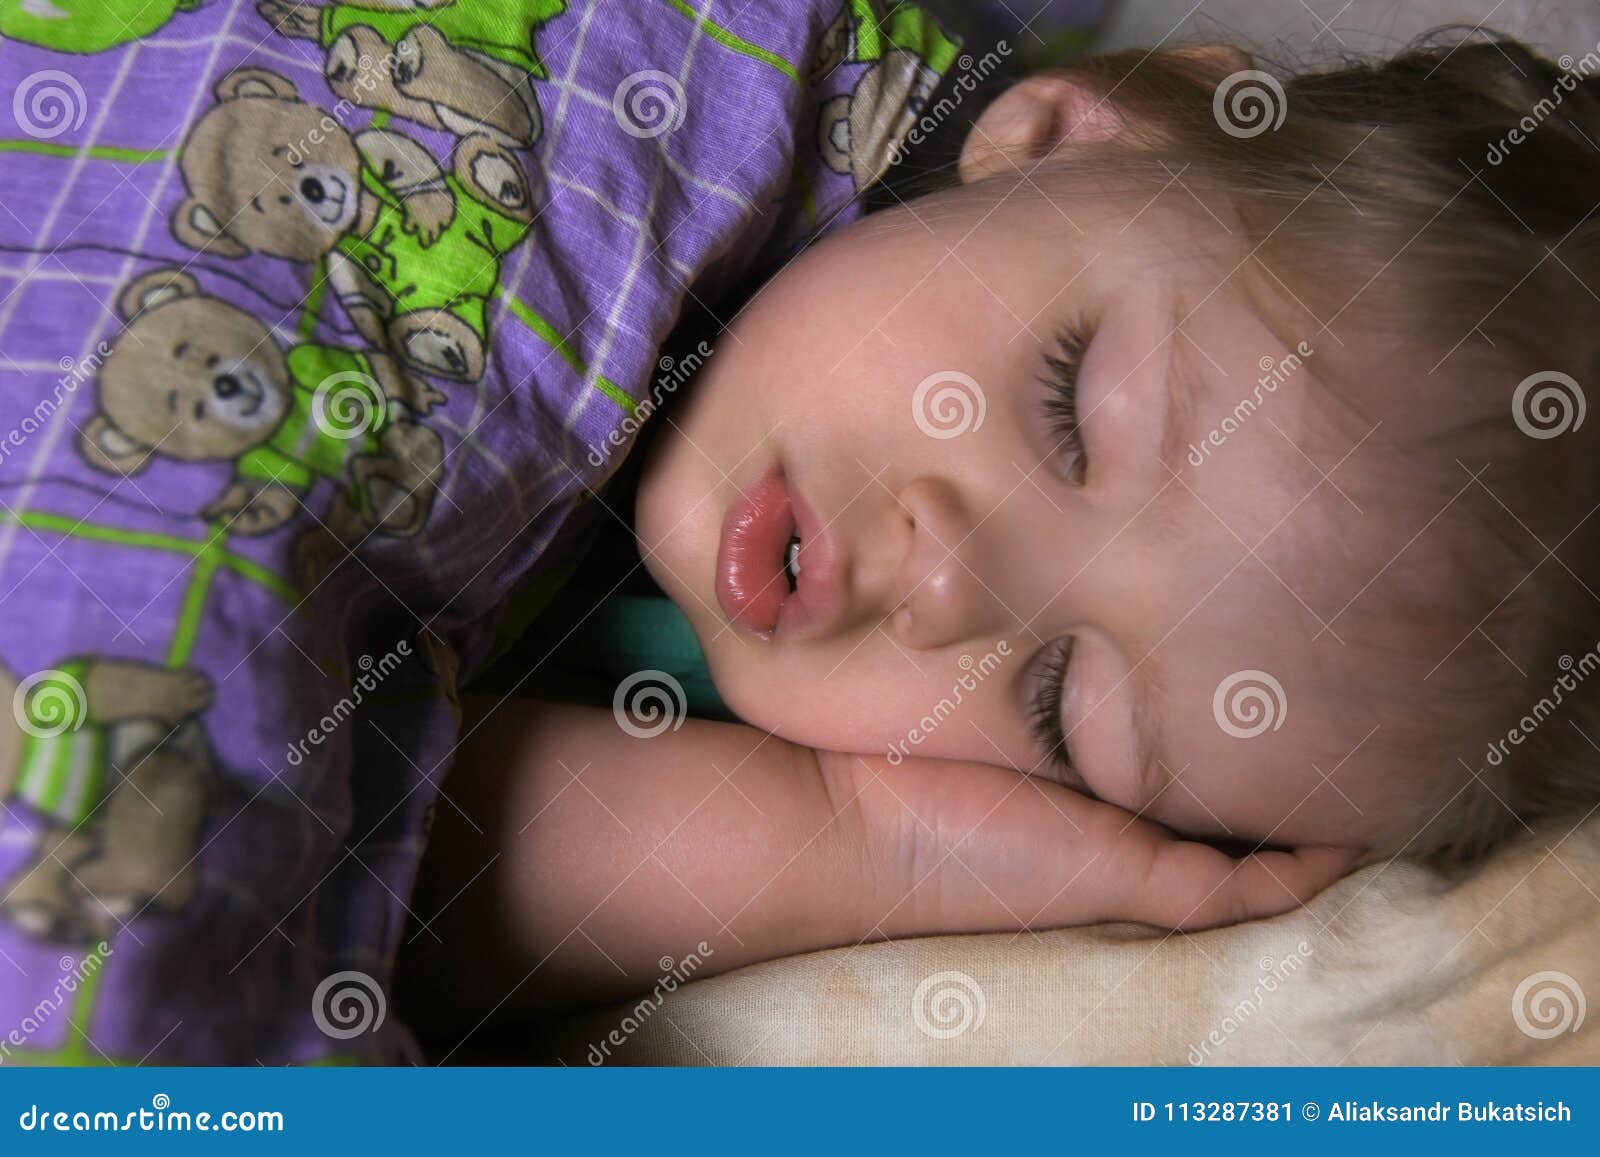 Внутрь киски мамы. Маленькая девочка заснула. Спящие мвоенькие девоч. Маленькая девочка уснула на руках.